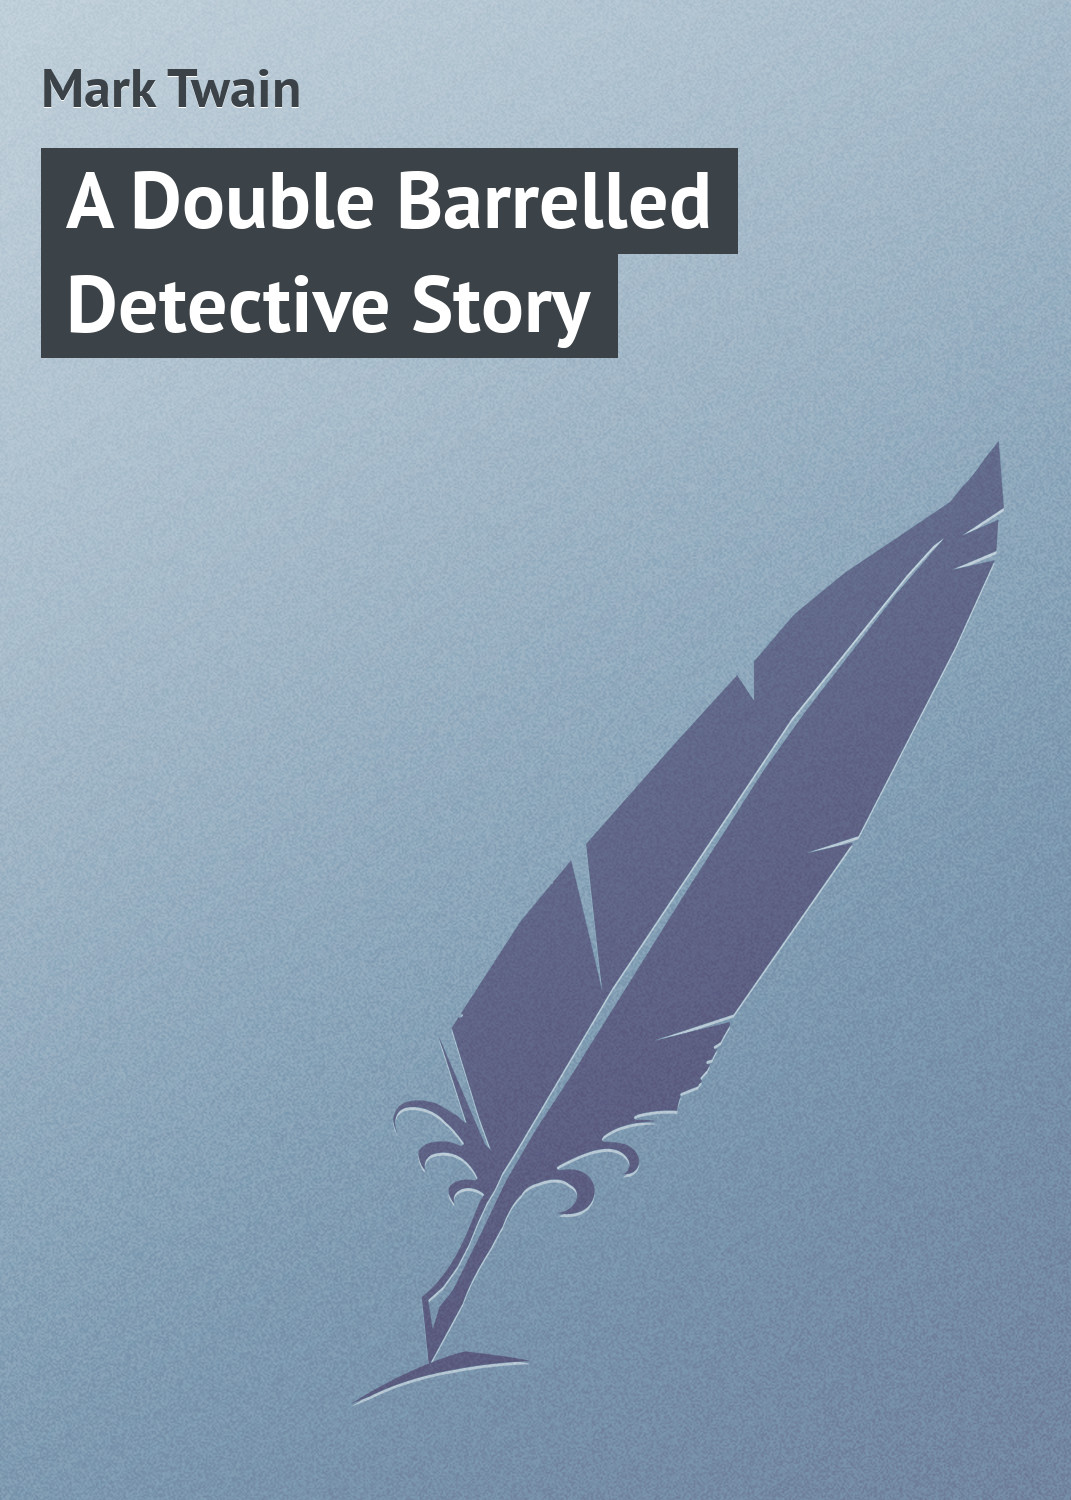 Книга A Double Barrelled Detective Story из серии , созданная Mark Twain, может относится к жанру Зарубежные детективы, Зарубежная классика, Классические детективы, Классическая проза. Стоимость электронной книги A Double Barrelled Detective Story с идентификатором 7975997 составляет 29.95 руб.